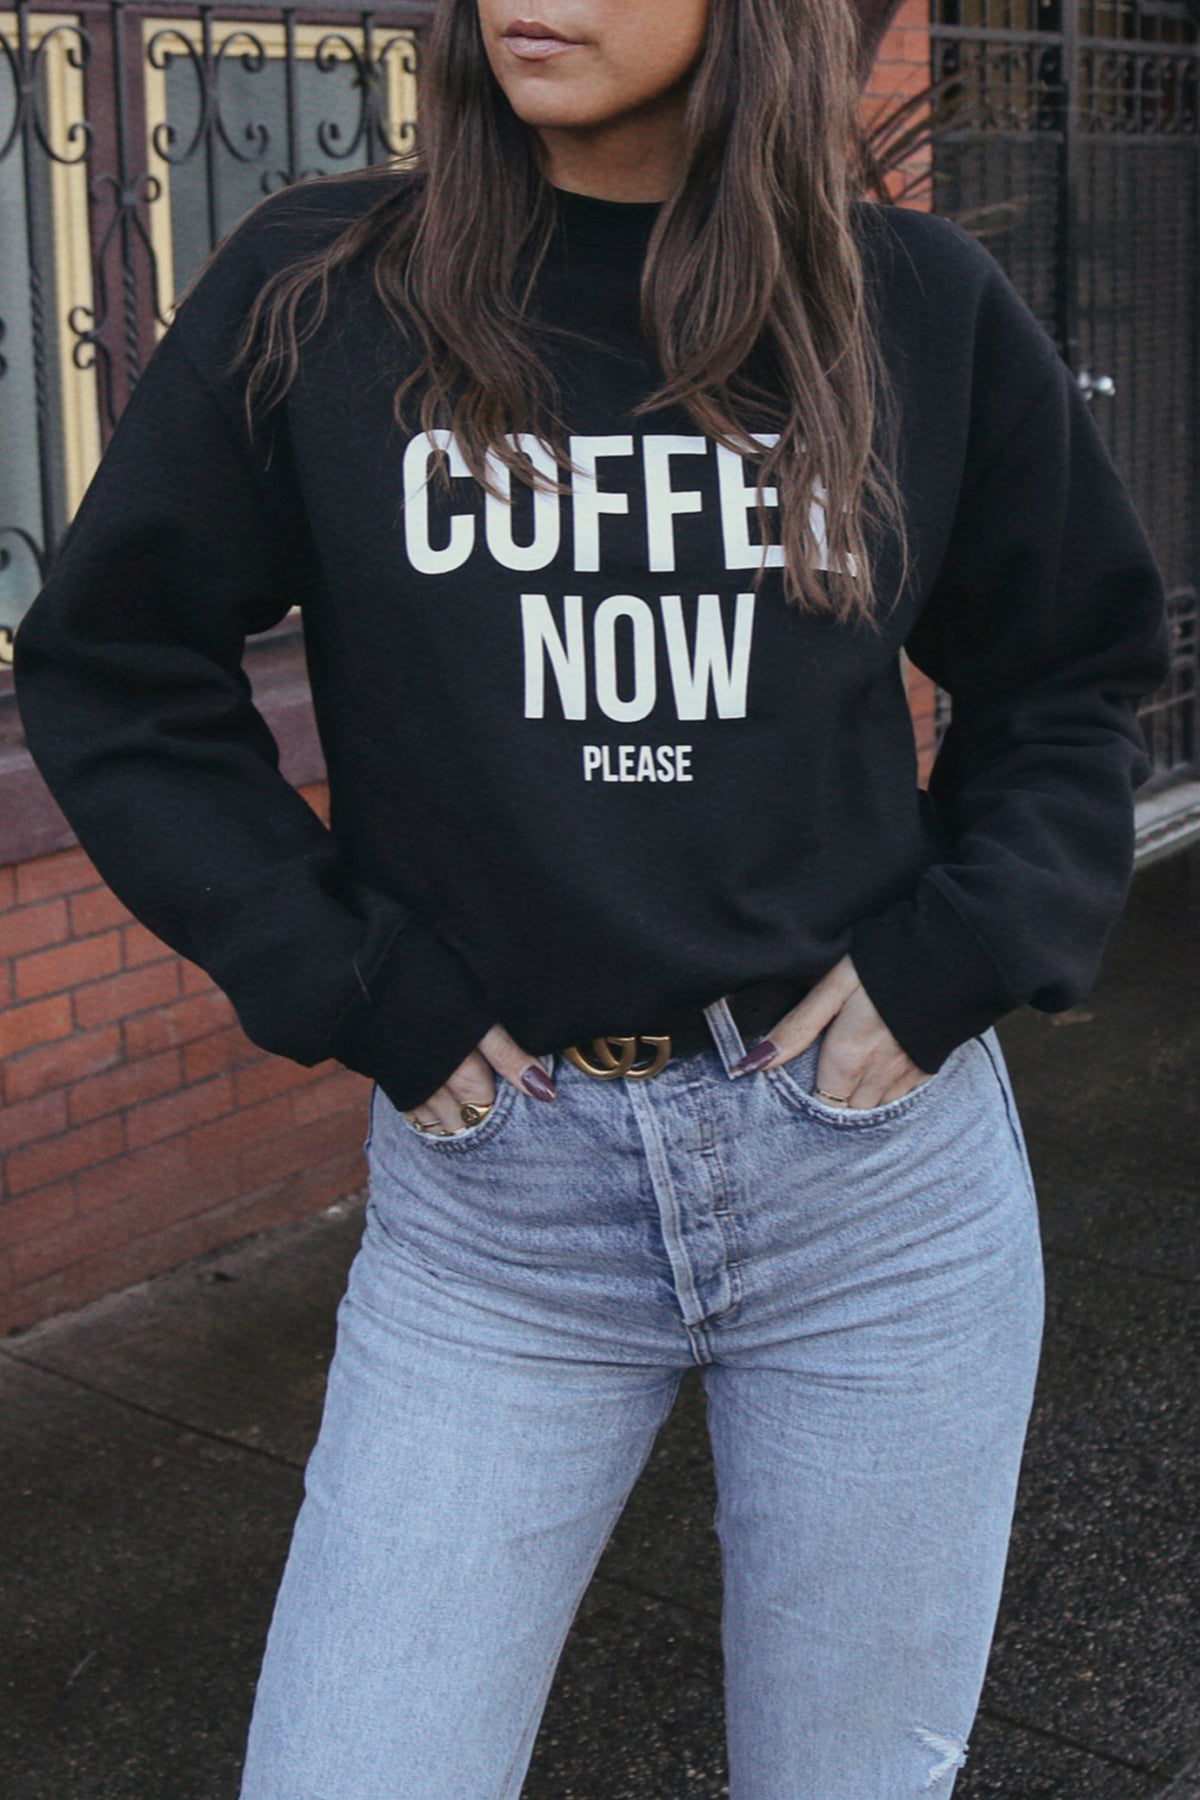 The "COFFEE NOW PLEASE" Crew Neck Sweatshirt | BLACK